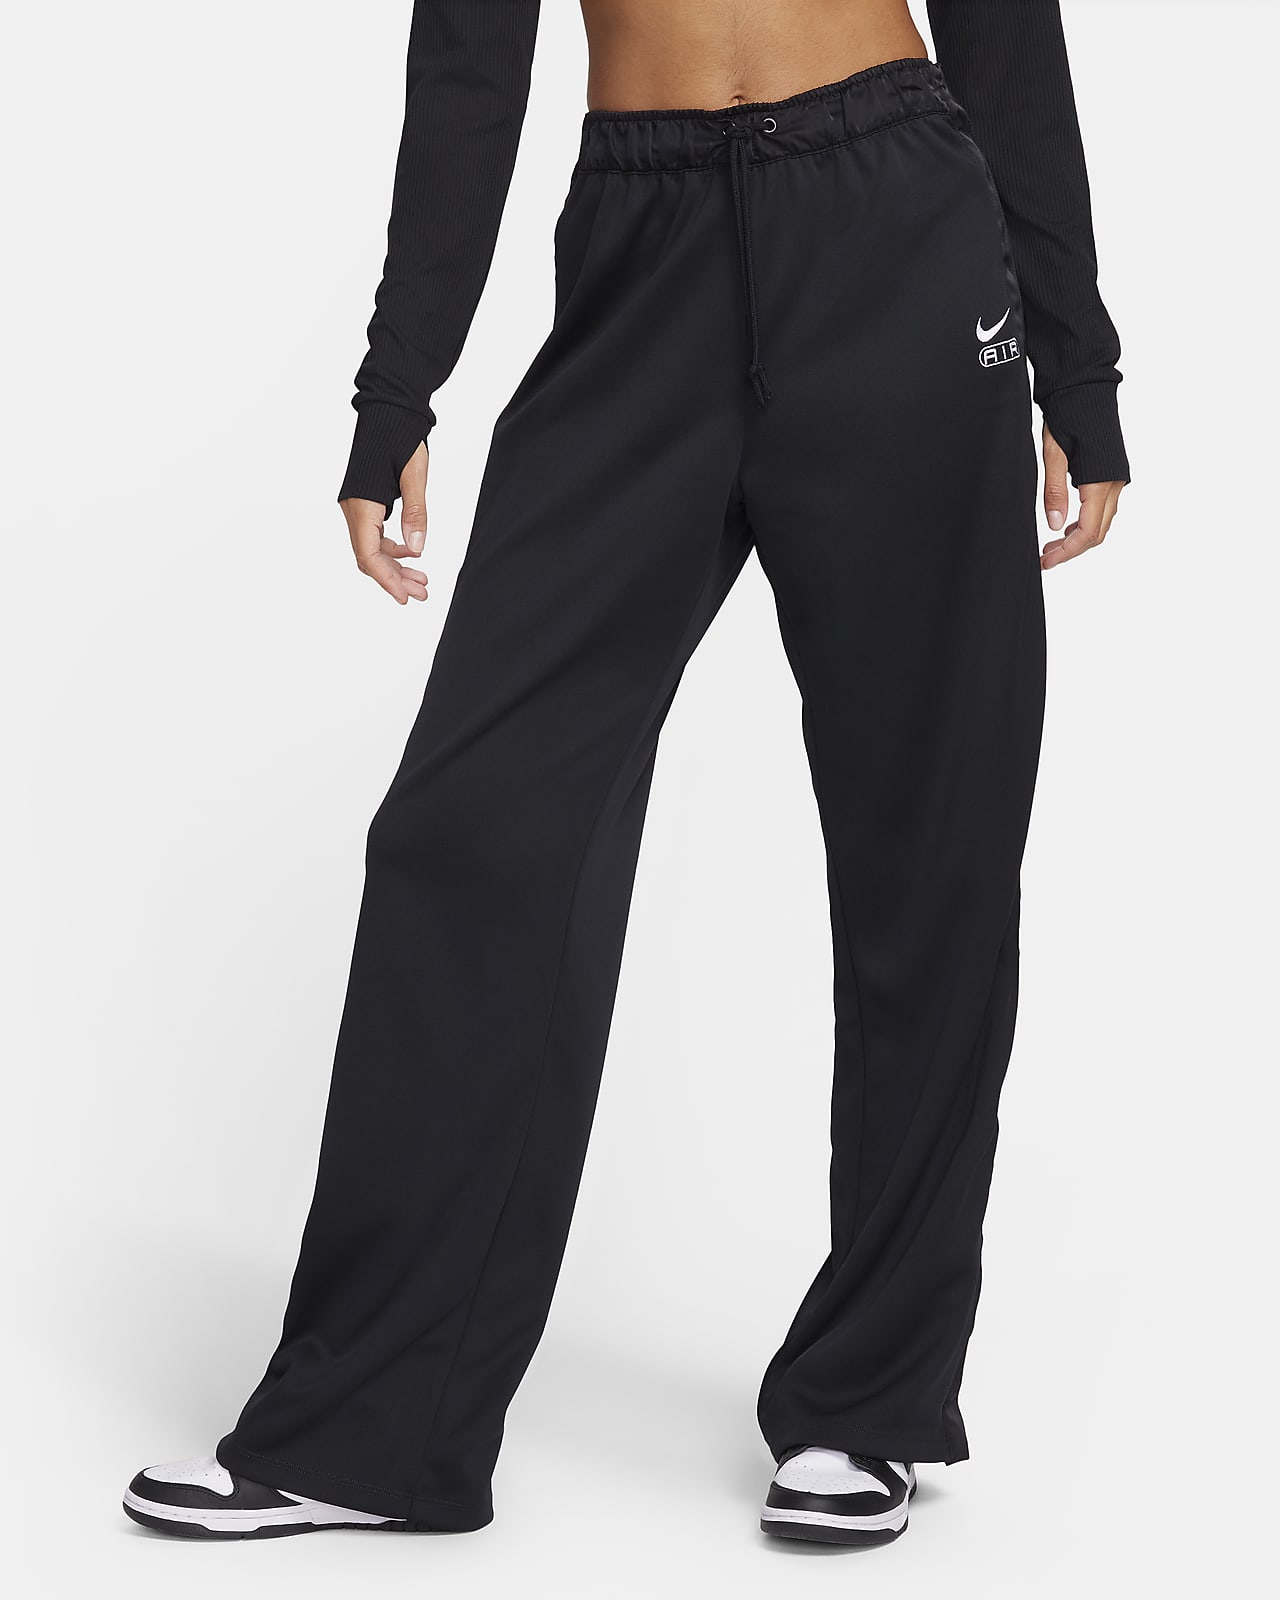 Pantalon de survêtement taille mi-haute Nike Air pour femme